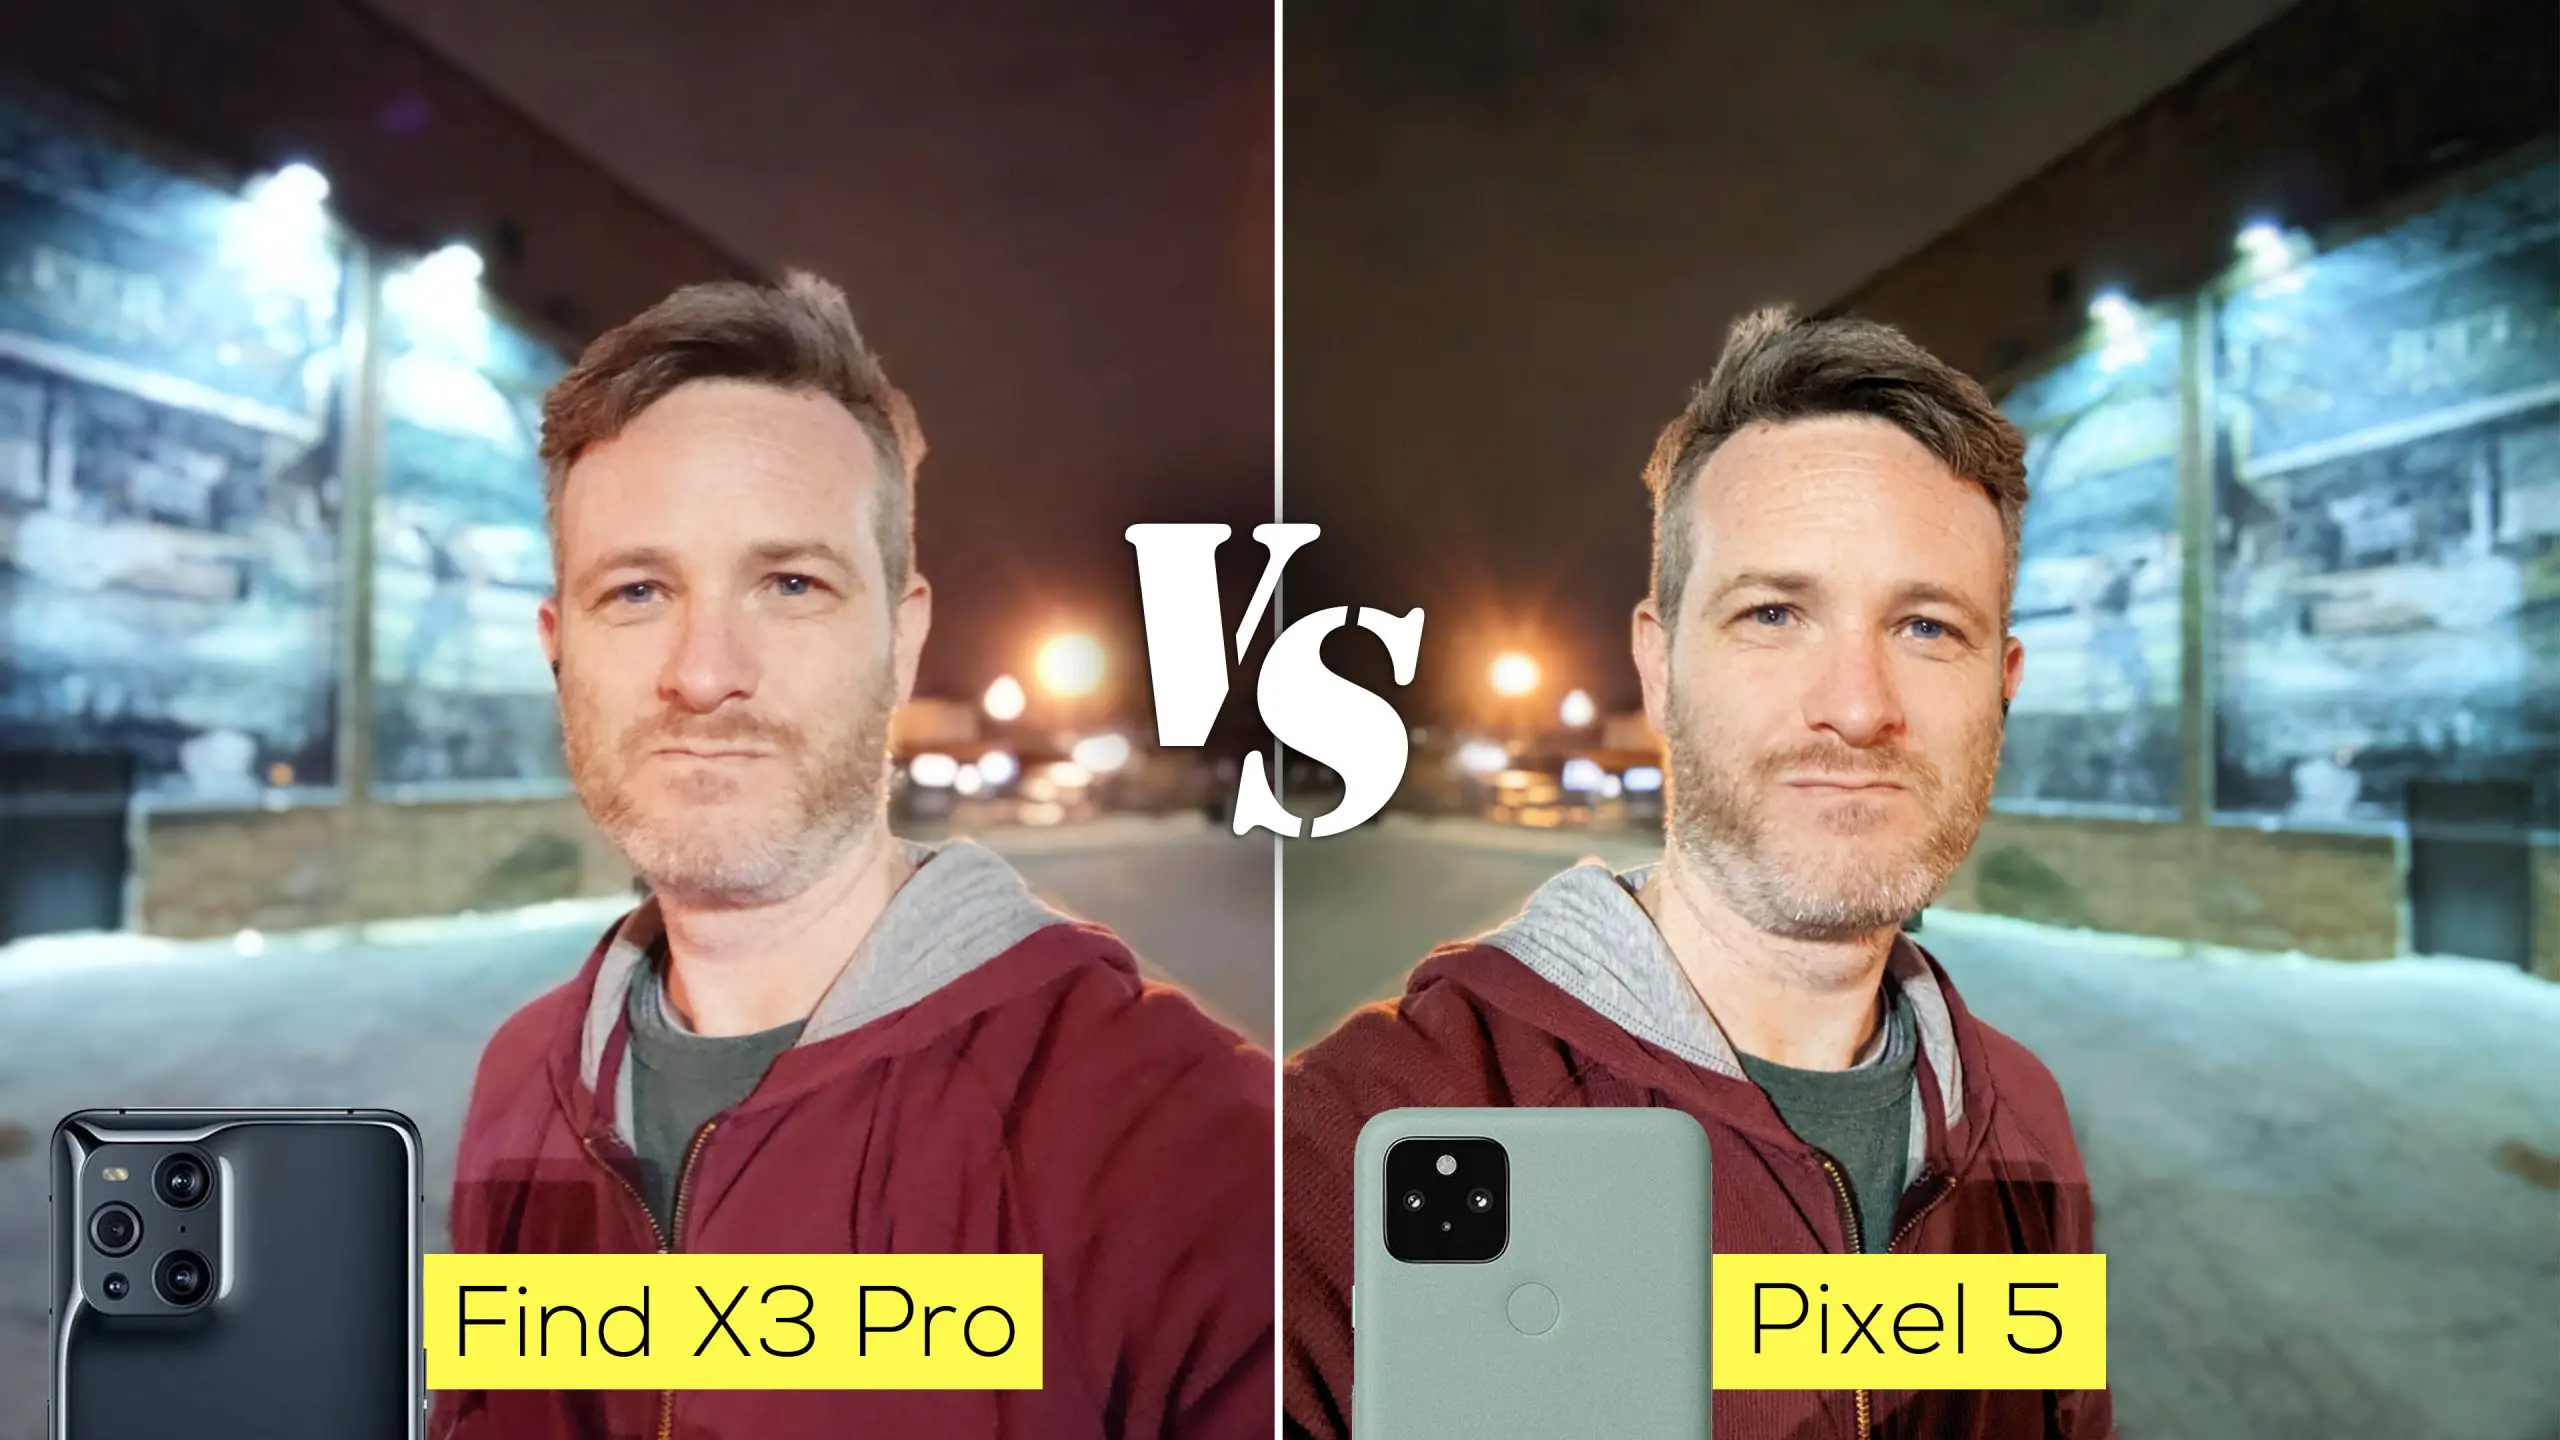 Oppo Find X3 Pro so sánh camera Pixel 5: Oppo Find X3 Pro – Camera chụp ảnh hoàn hảo đến từng chi tiết. Xem ngay những hình ảnh so sánh chất lượng camera giữa Oppo Find X3 Pro và Pixel